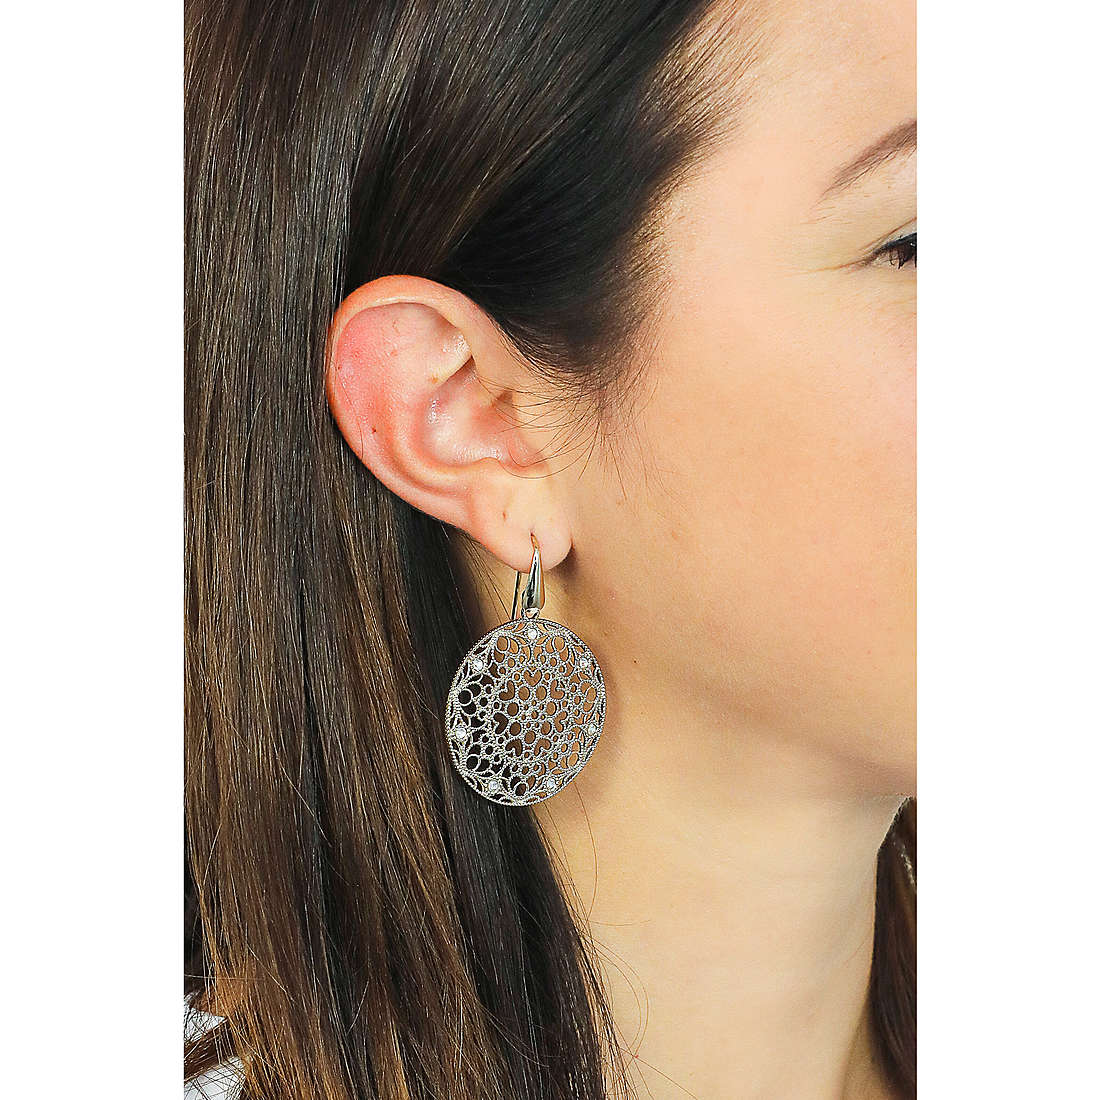 Sovrani earrings Venere woman J4323 wearing